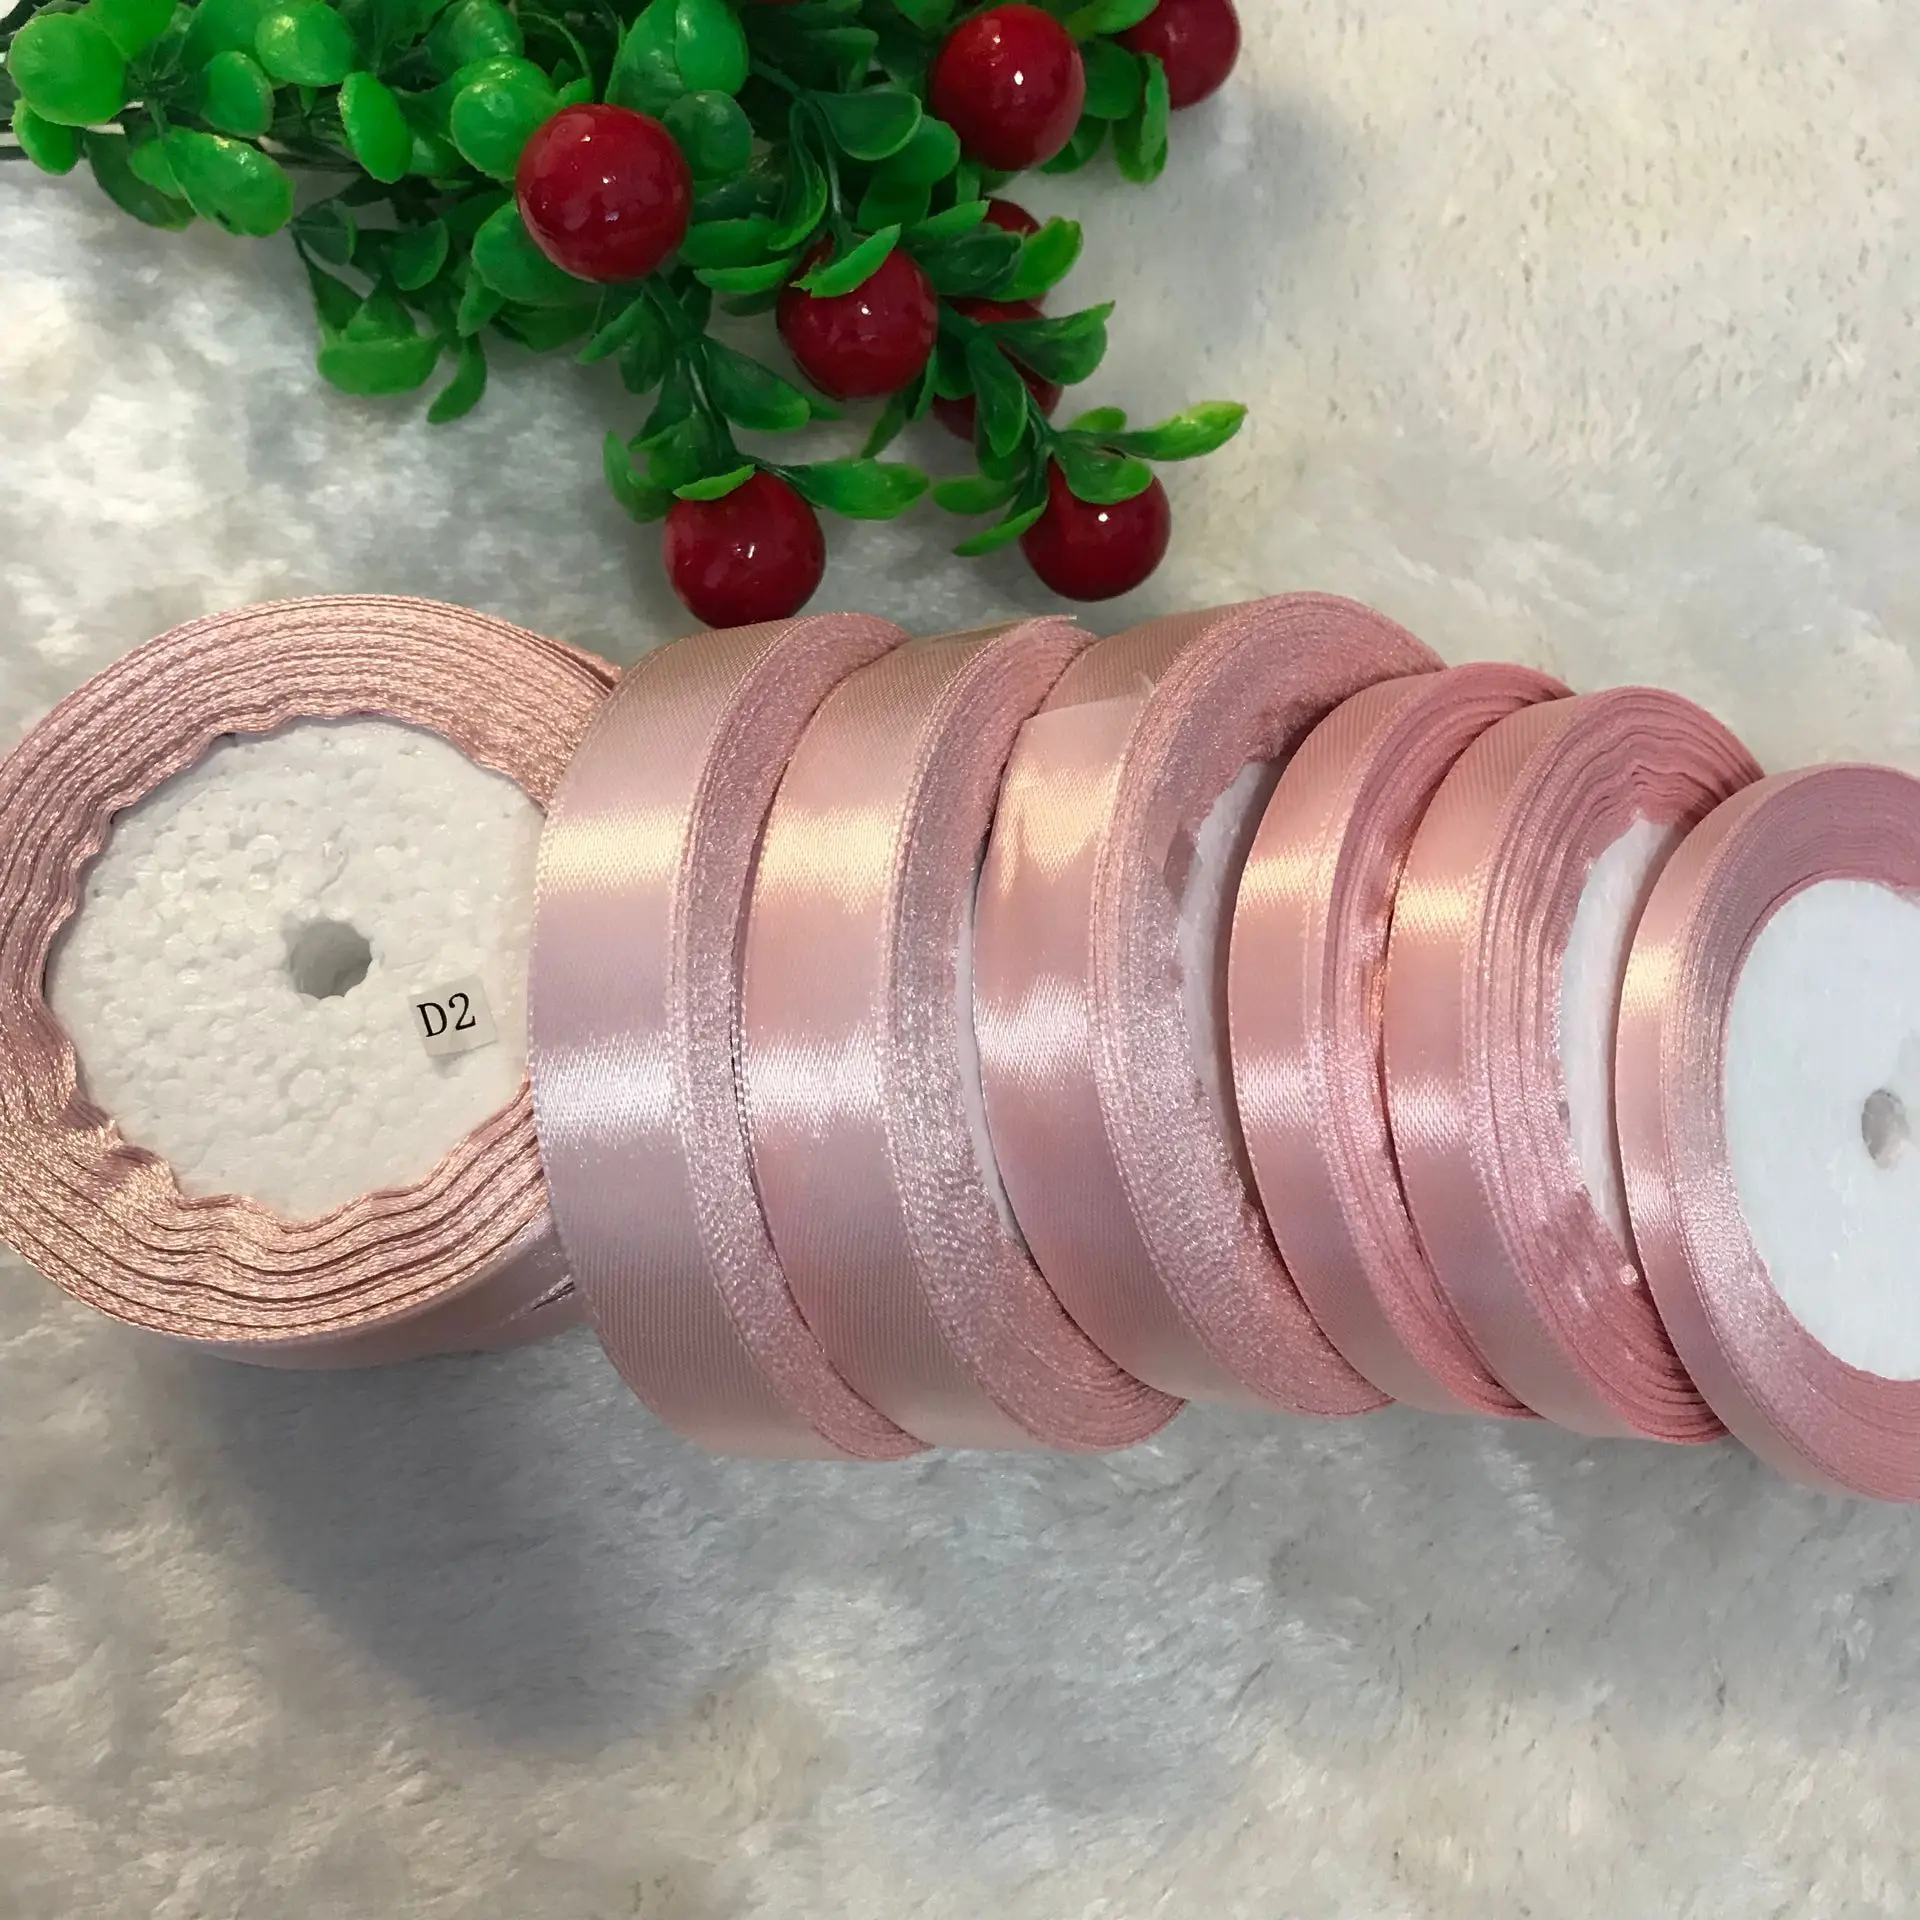 6 мм-50 мм кораллово-розовая шелковая атласная лента вечерние украшения для дома и свадьбы Подарочная упаковка на Рождество и день рождения DIY материалы 22 м